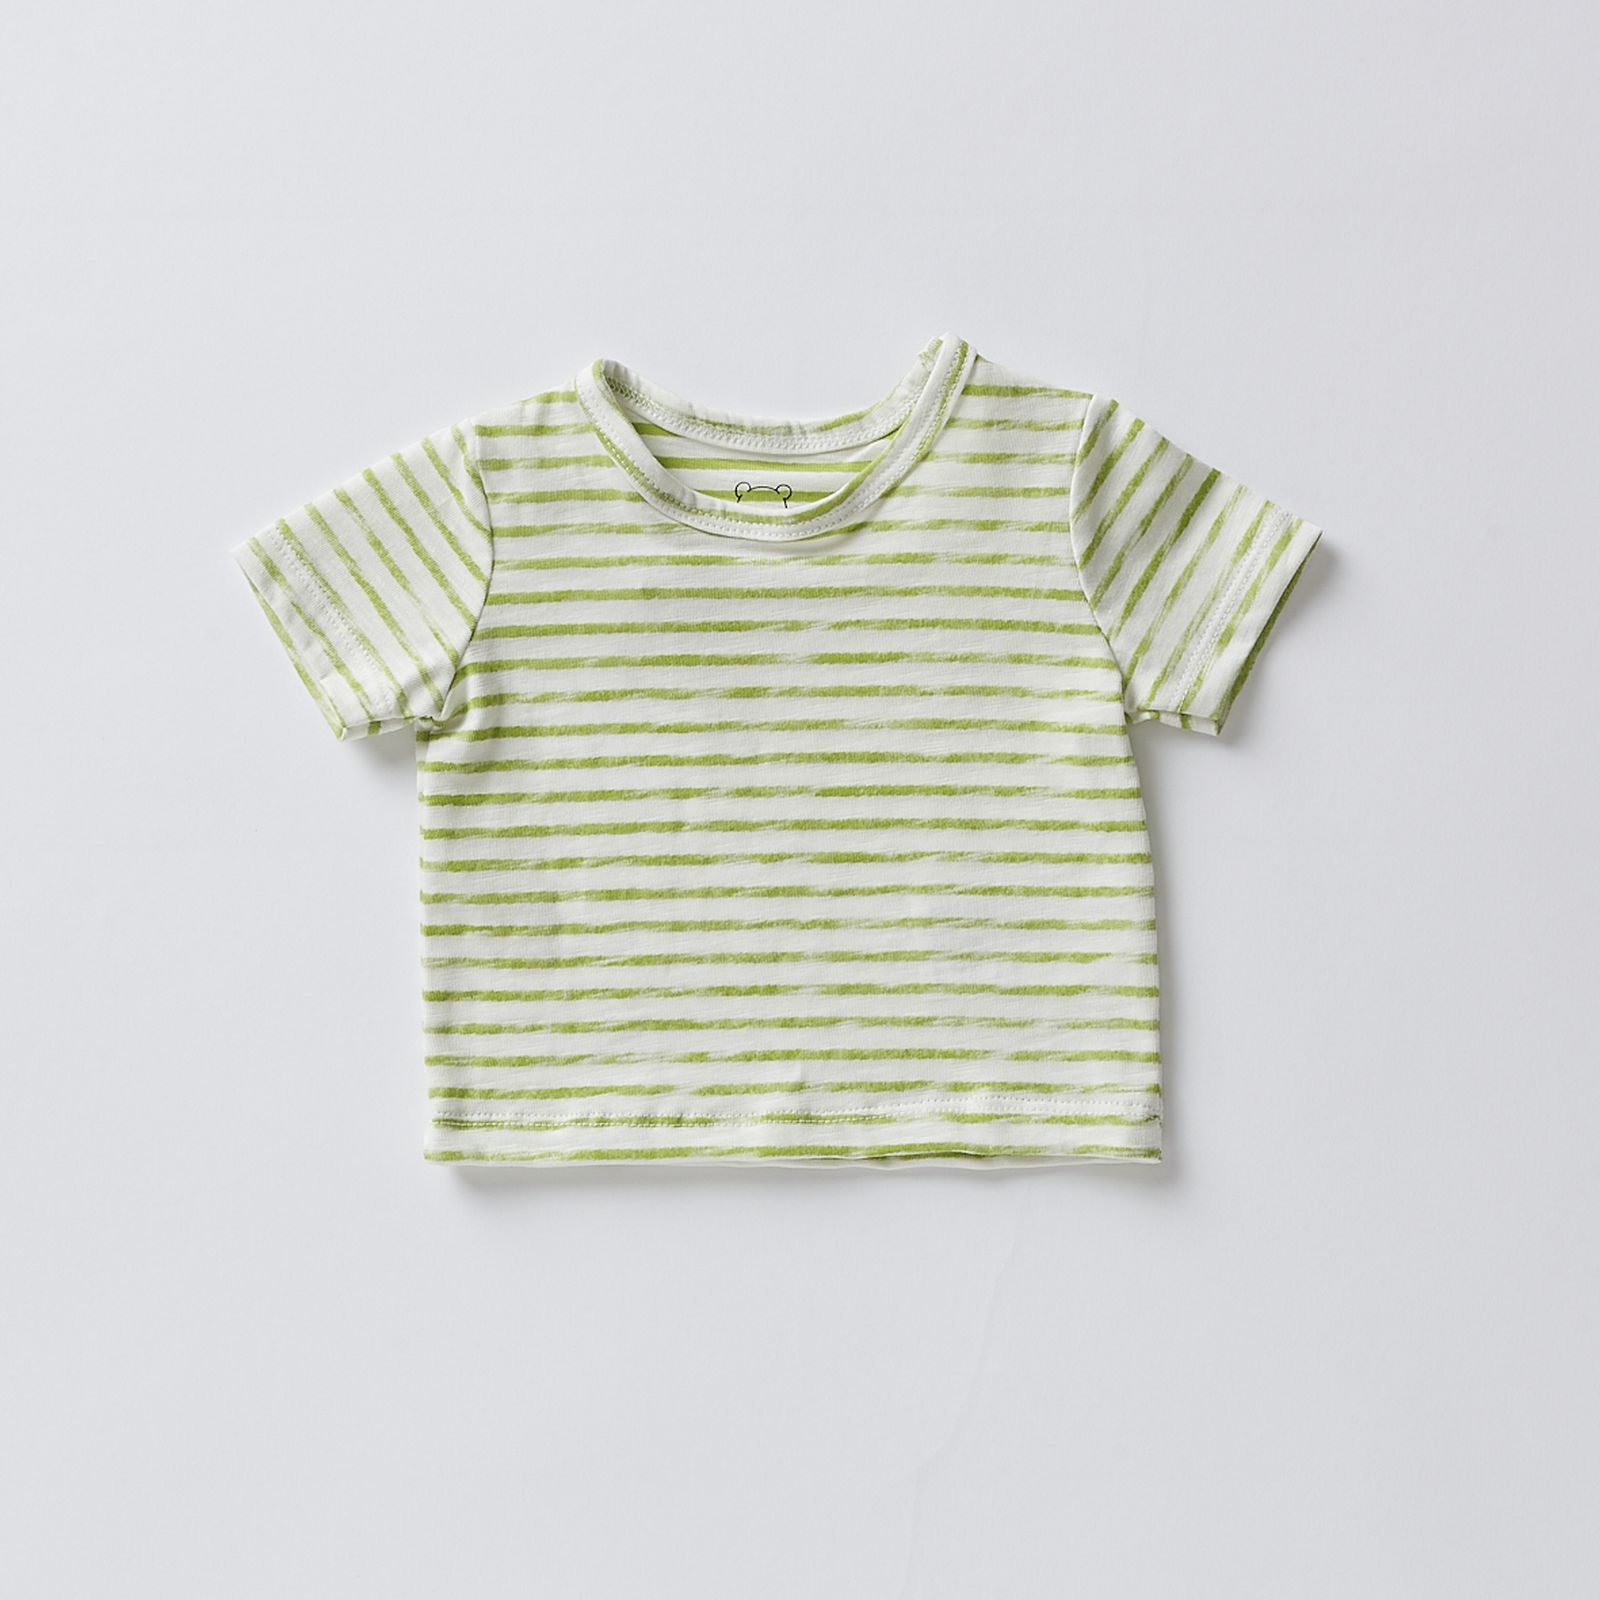 T-Shirt Rigatino: Classico Intramontabile con un Twist Moderno per Bambini!